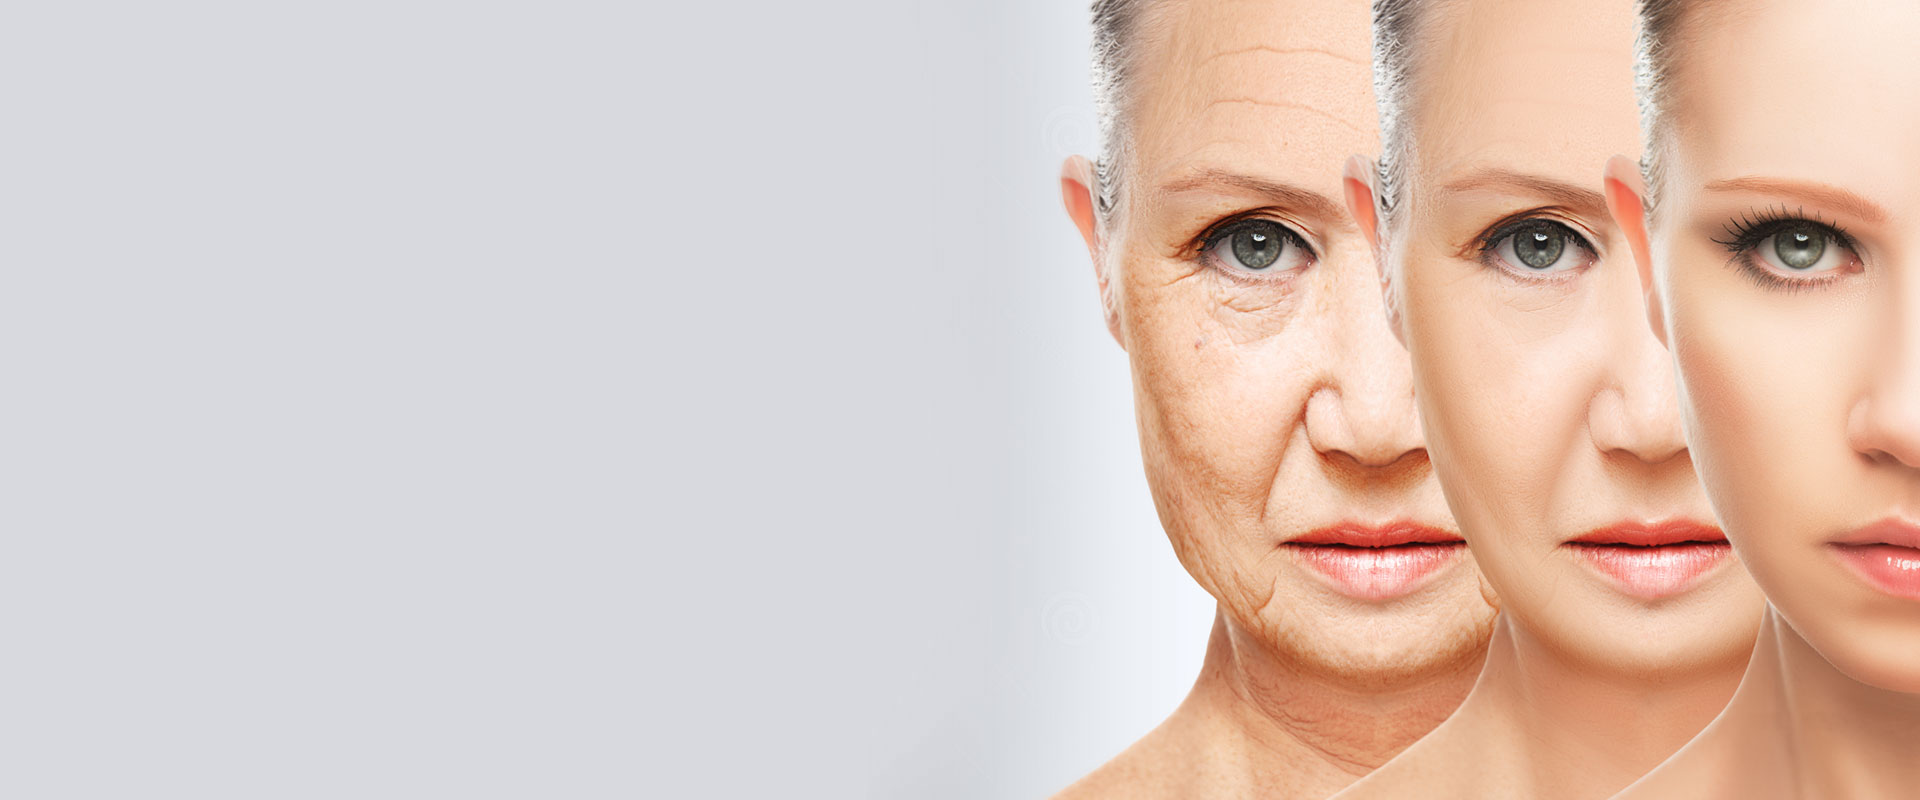 anti-aging skincare